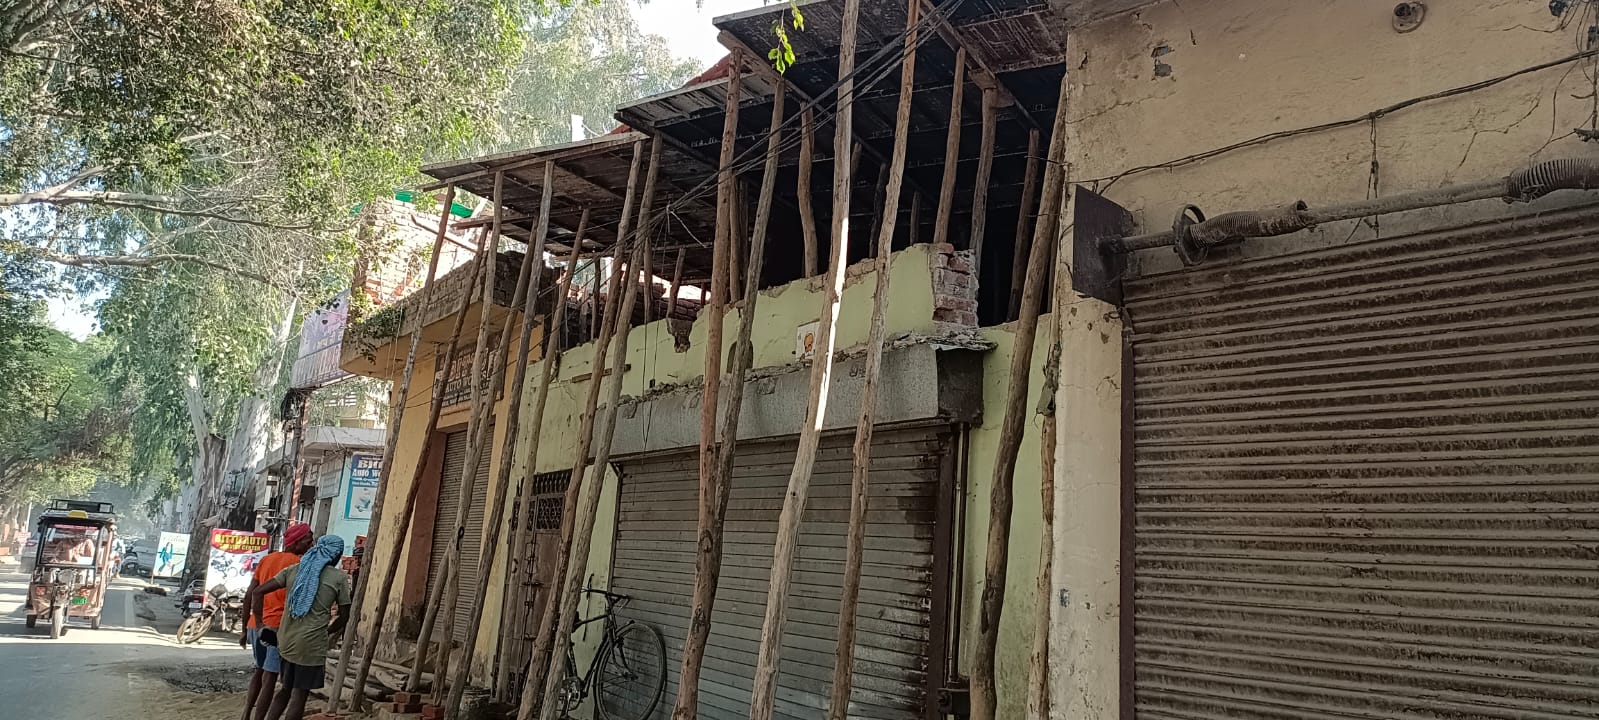 जेल से बाहर आए भाजपा नेता ने वेस्ट हलके में नहर किनारे खड़ी कर दी अवैध दुकानें